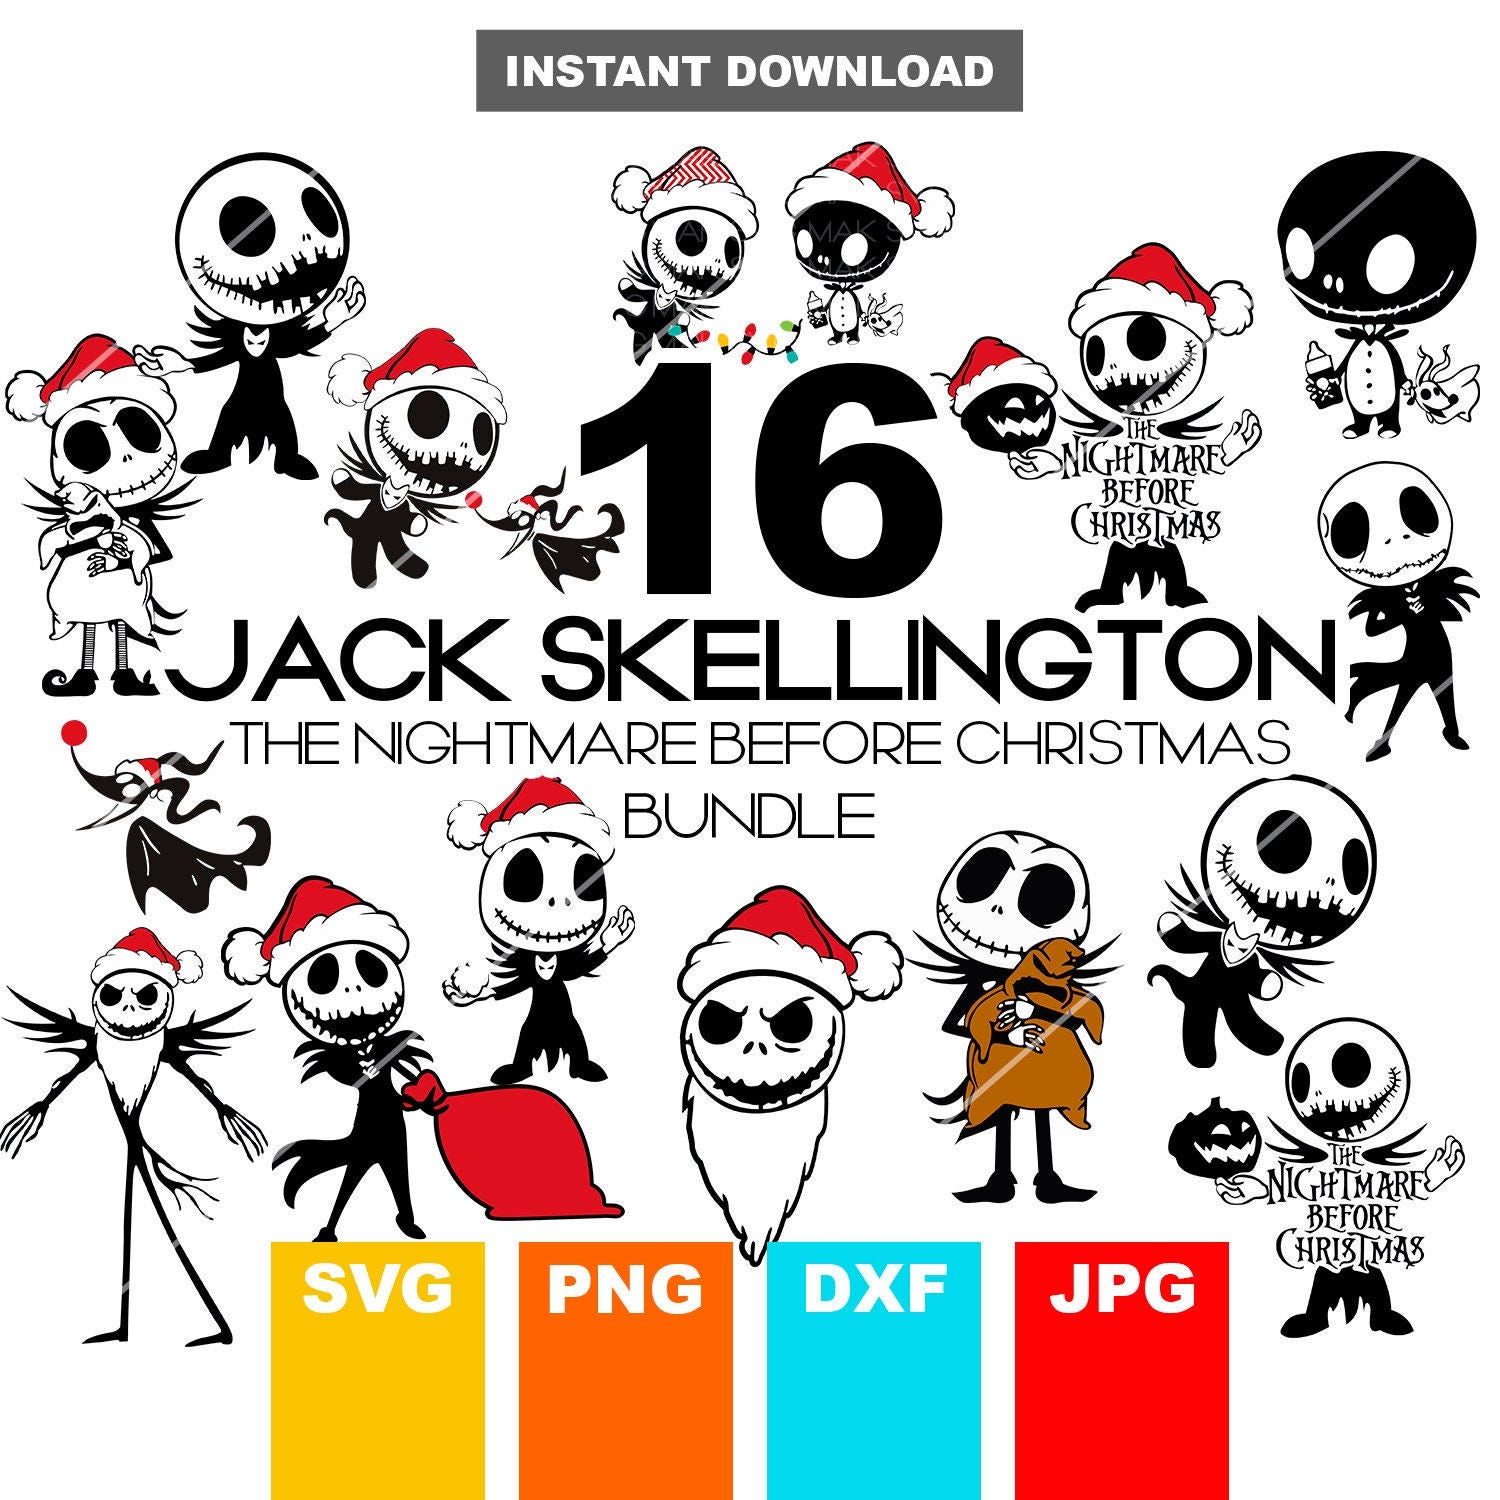 Jack Skellington Bundle SVG, Jack Skellington SVG, Nightmare Before Christmas Svg, Clipart, Svg Files for Cricut, Cut files